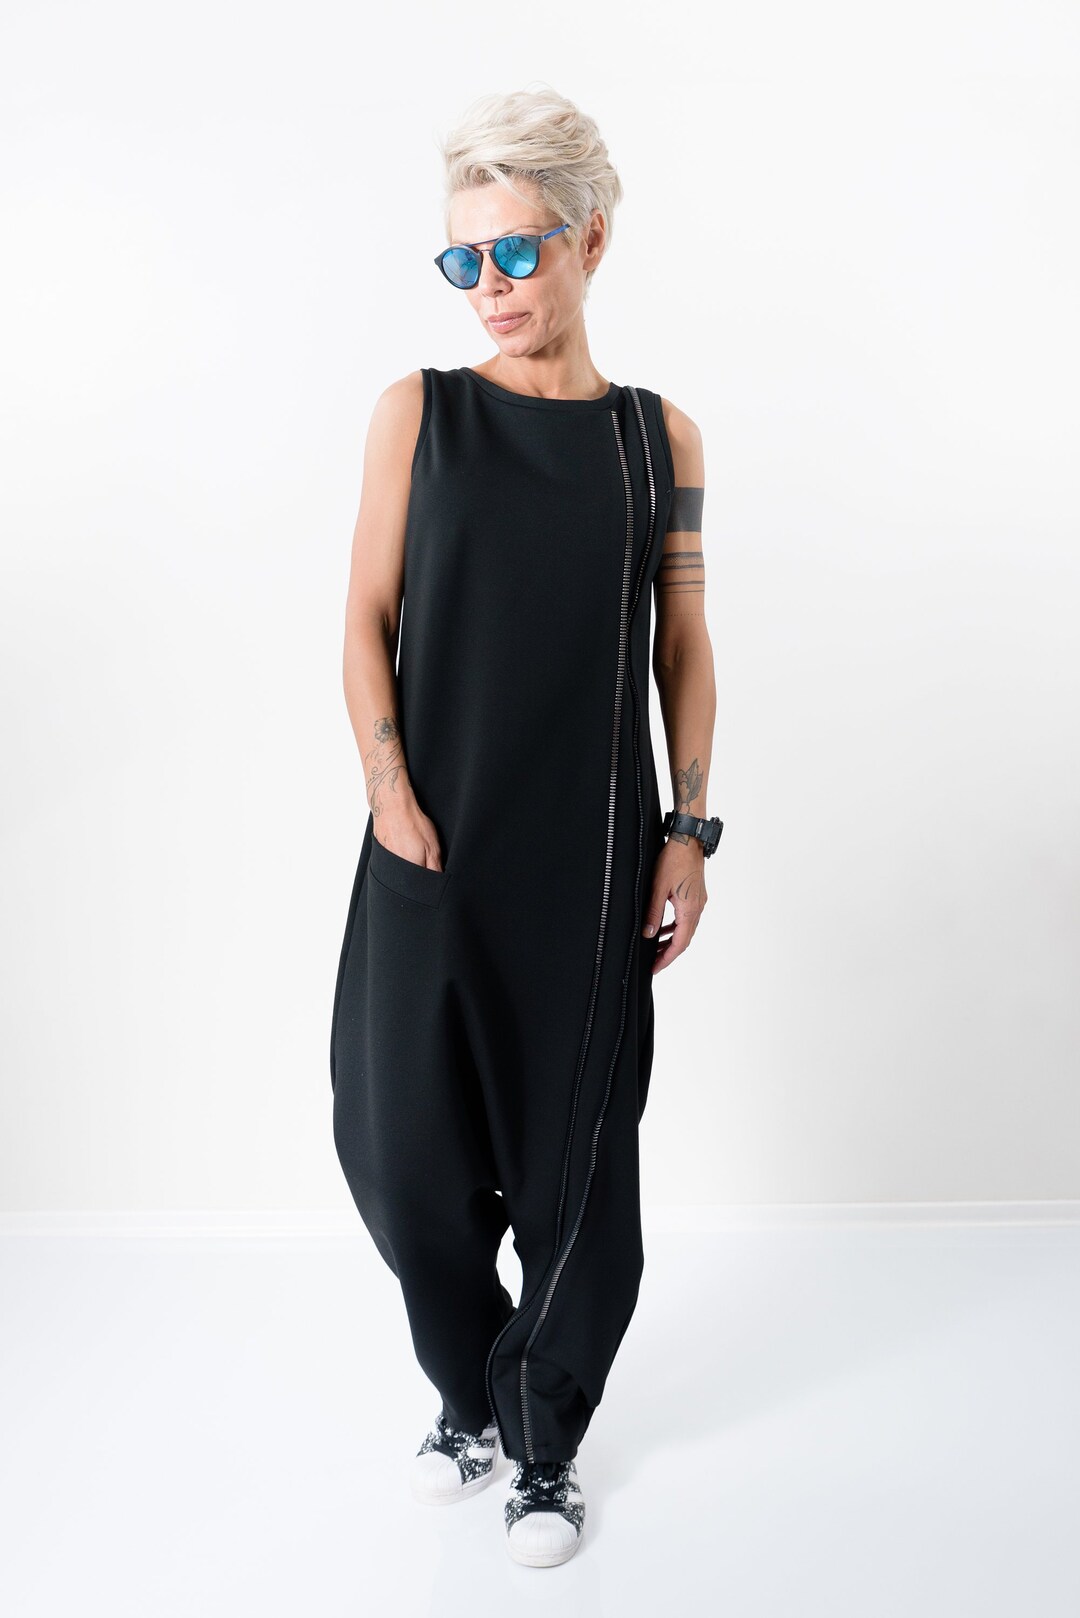 Black Jumpsuit Plus Size Clothing for Women Harem Jumpsuit - Etsy